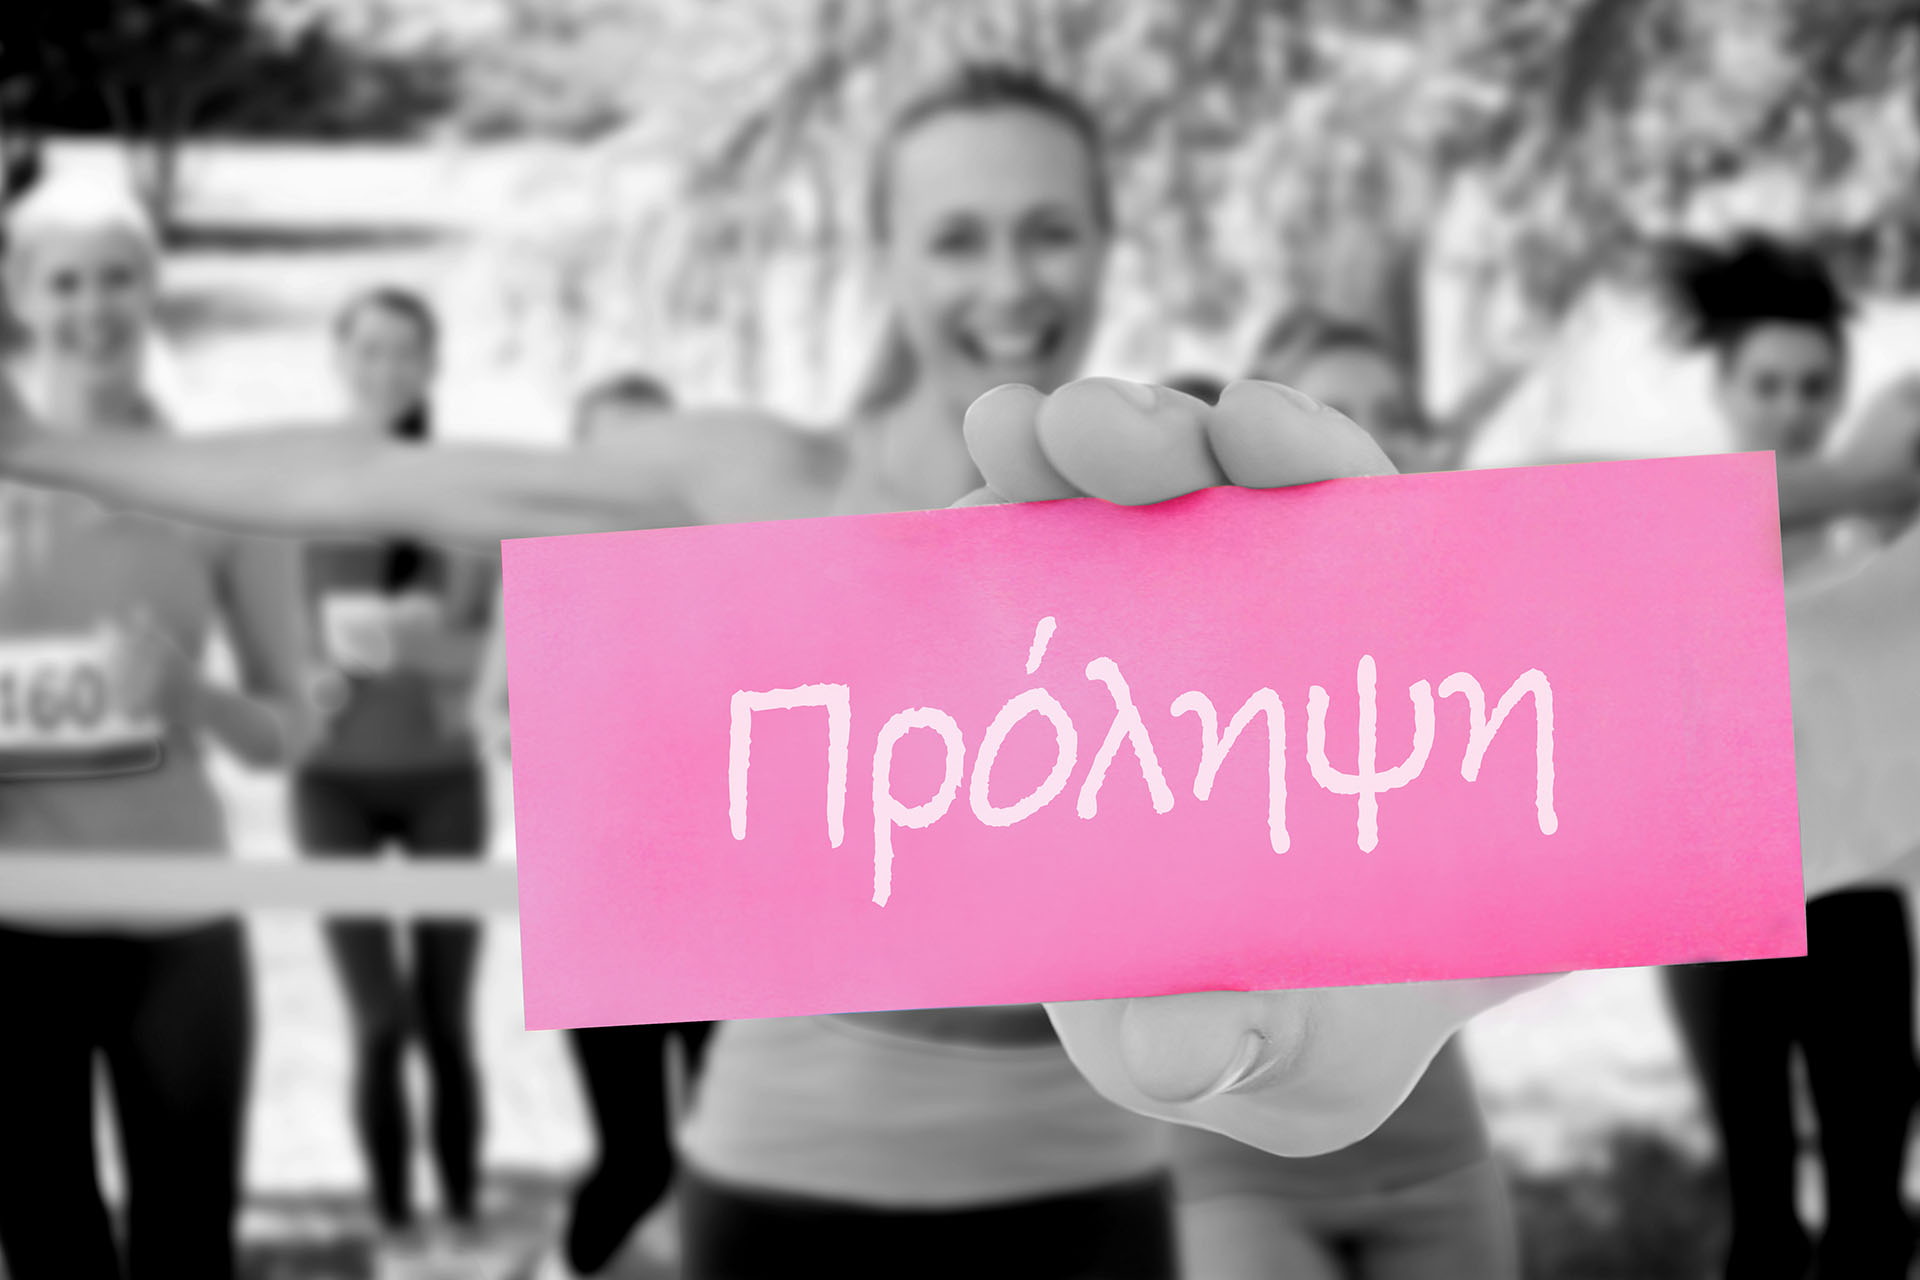  Δωρεάν προληπτικός έλεγχος για καρκίνο του μαστού με την υποστήριξη των κοινωνικών δομών του Δήμου Ιερής Πόλης Μεσολογγίου 